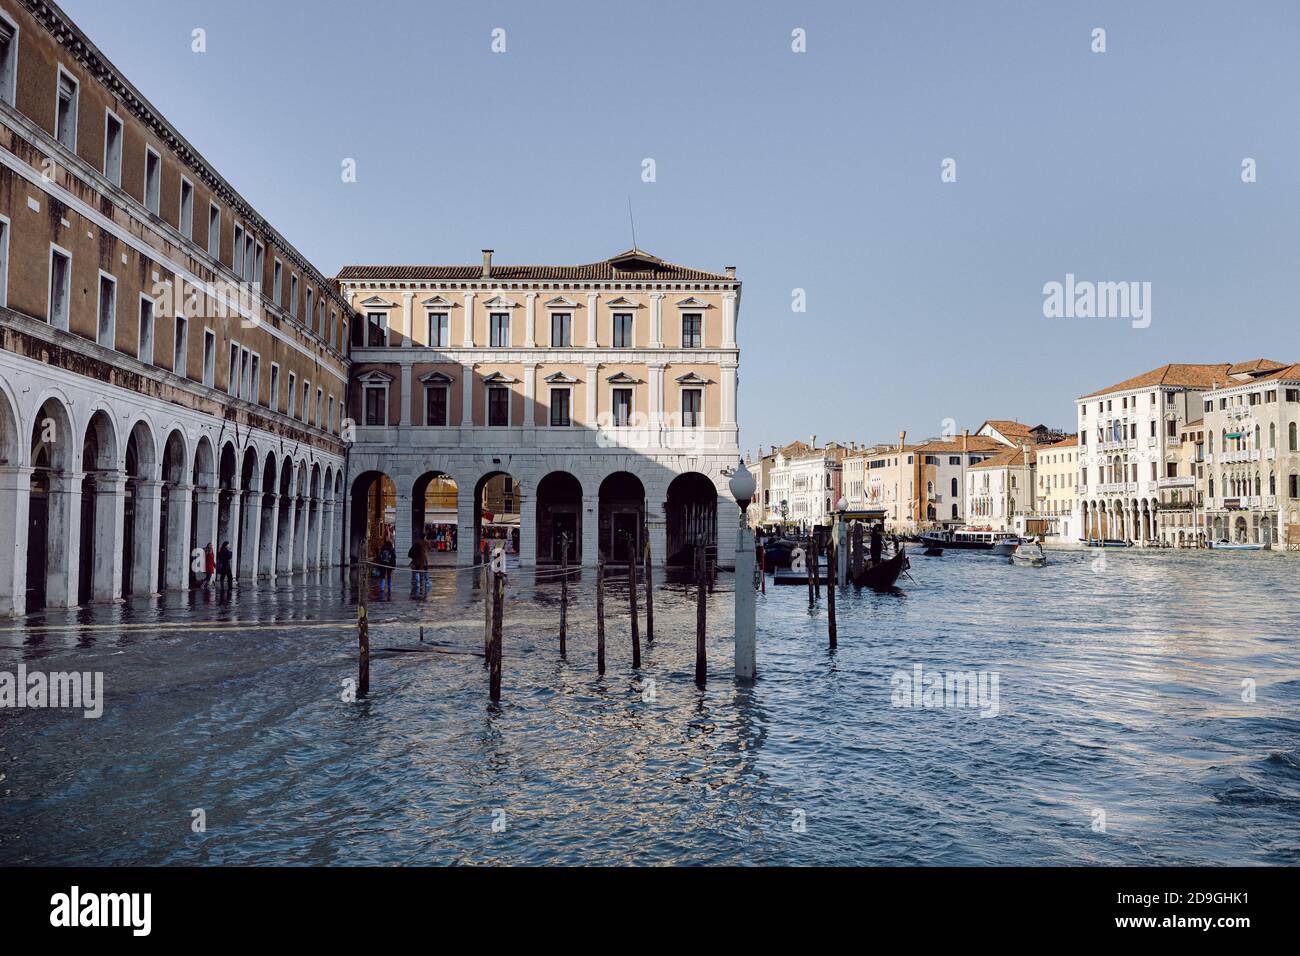 Rialto Erbaria under water, acqua alta floods in Venice, Grand Canal Stock Photo